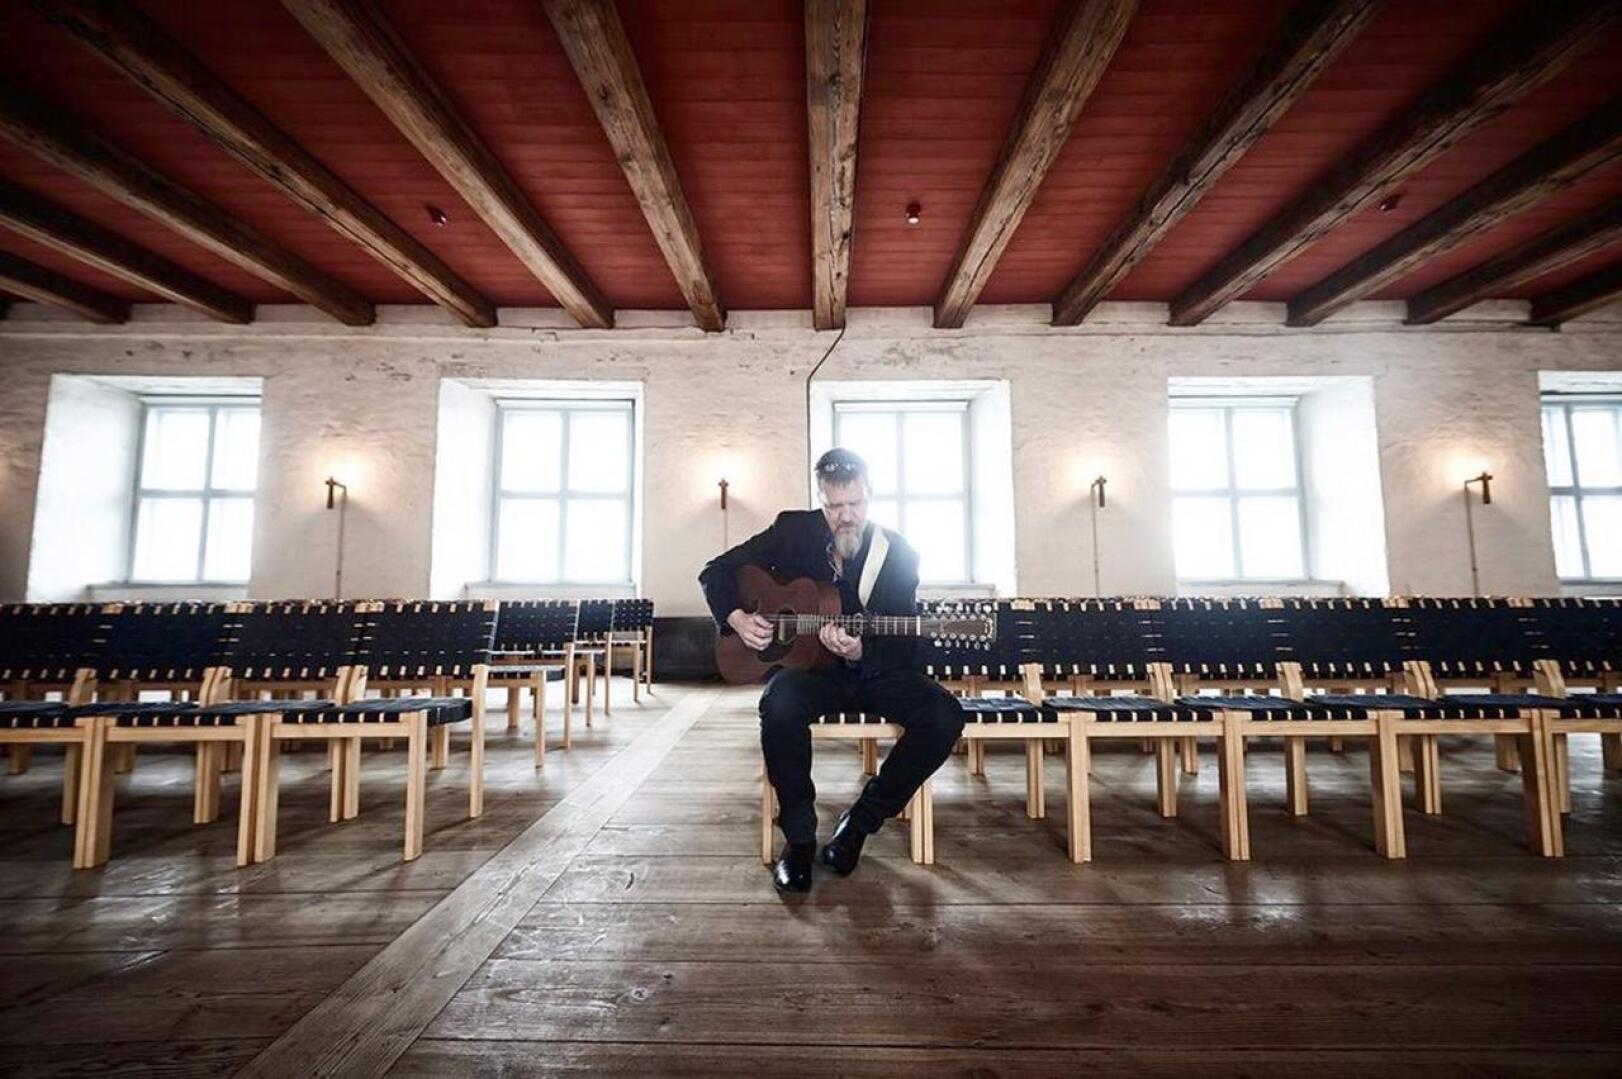 Yksi syksyn huippuvieraista on ruotsalainen kitaristi Roger Tallroth, joka esiintyy Kokkolassa kaustislaisen kansanmuusikon Esko Järvelän ja Centrian opiskelijoiden kanssa lokakuussa.